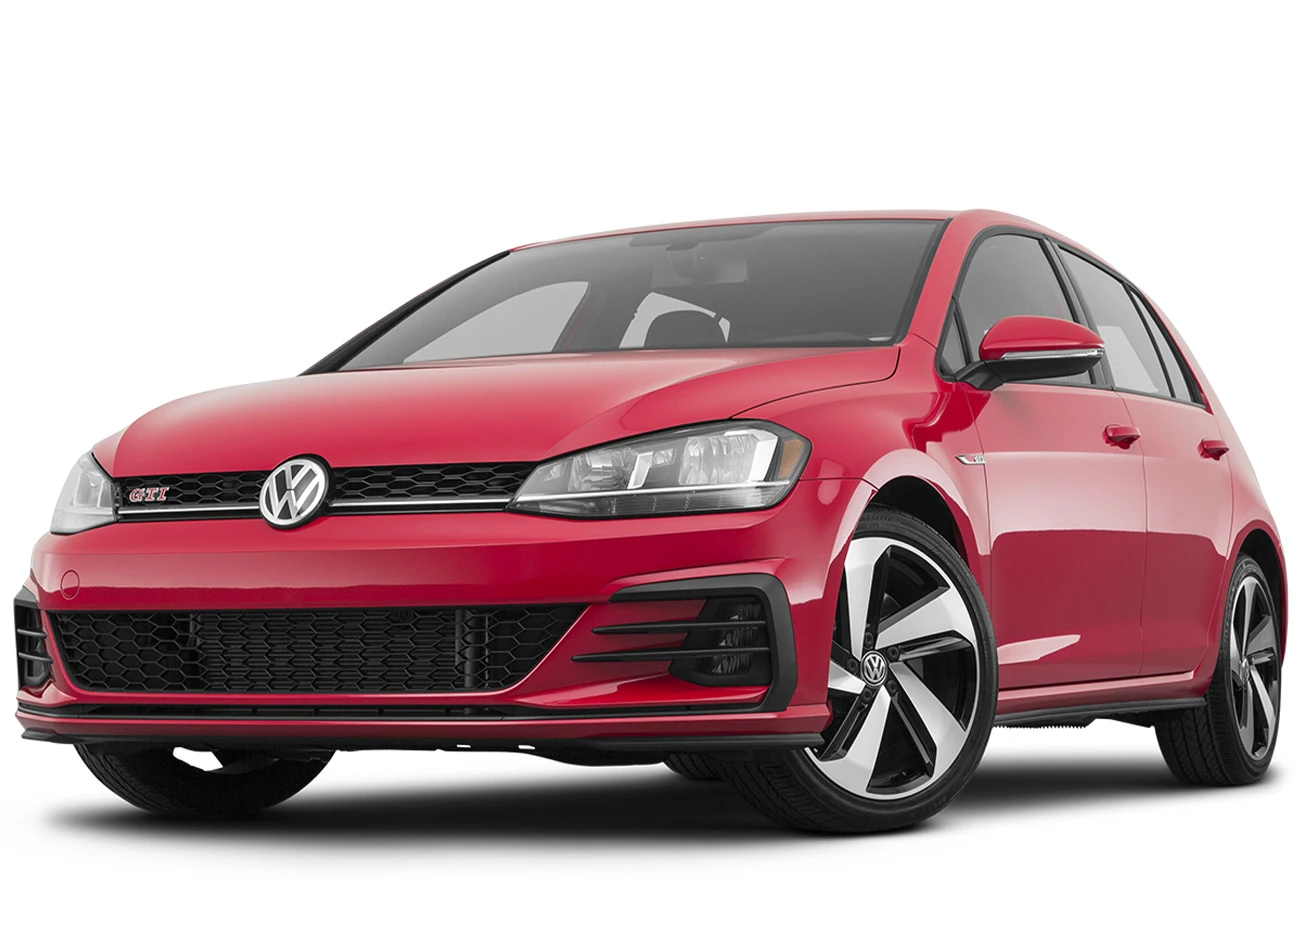 2020 Volkswagen Golf: Exterior front view | CarMax